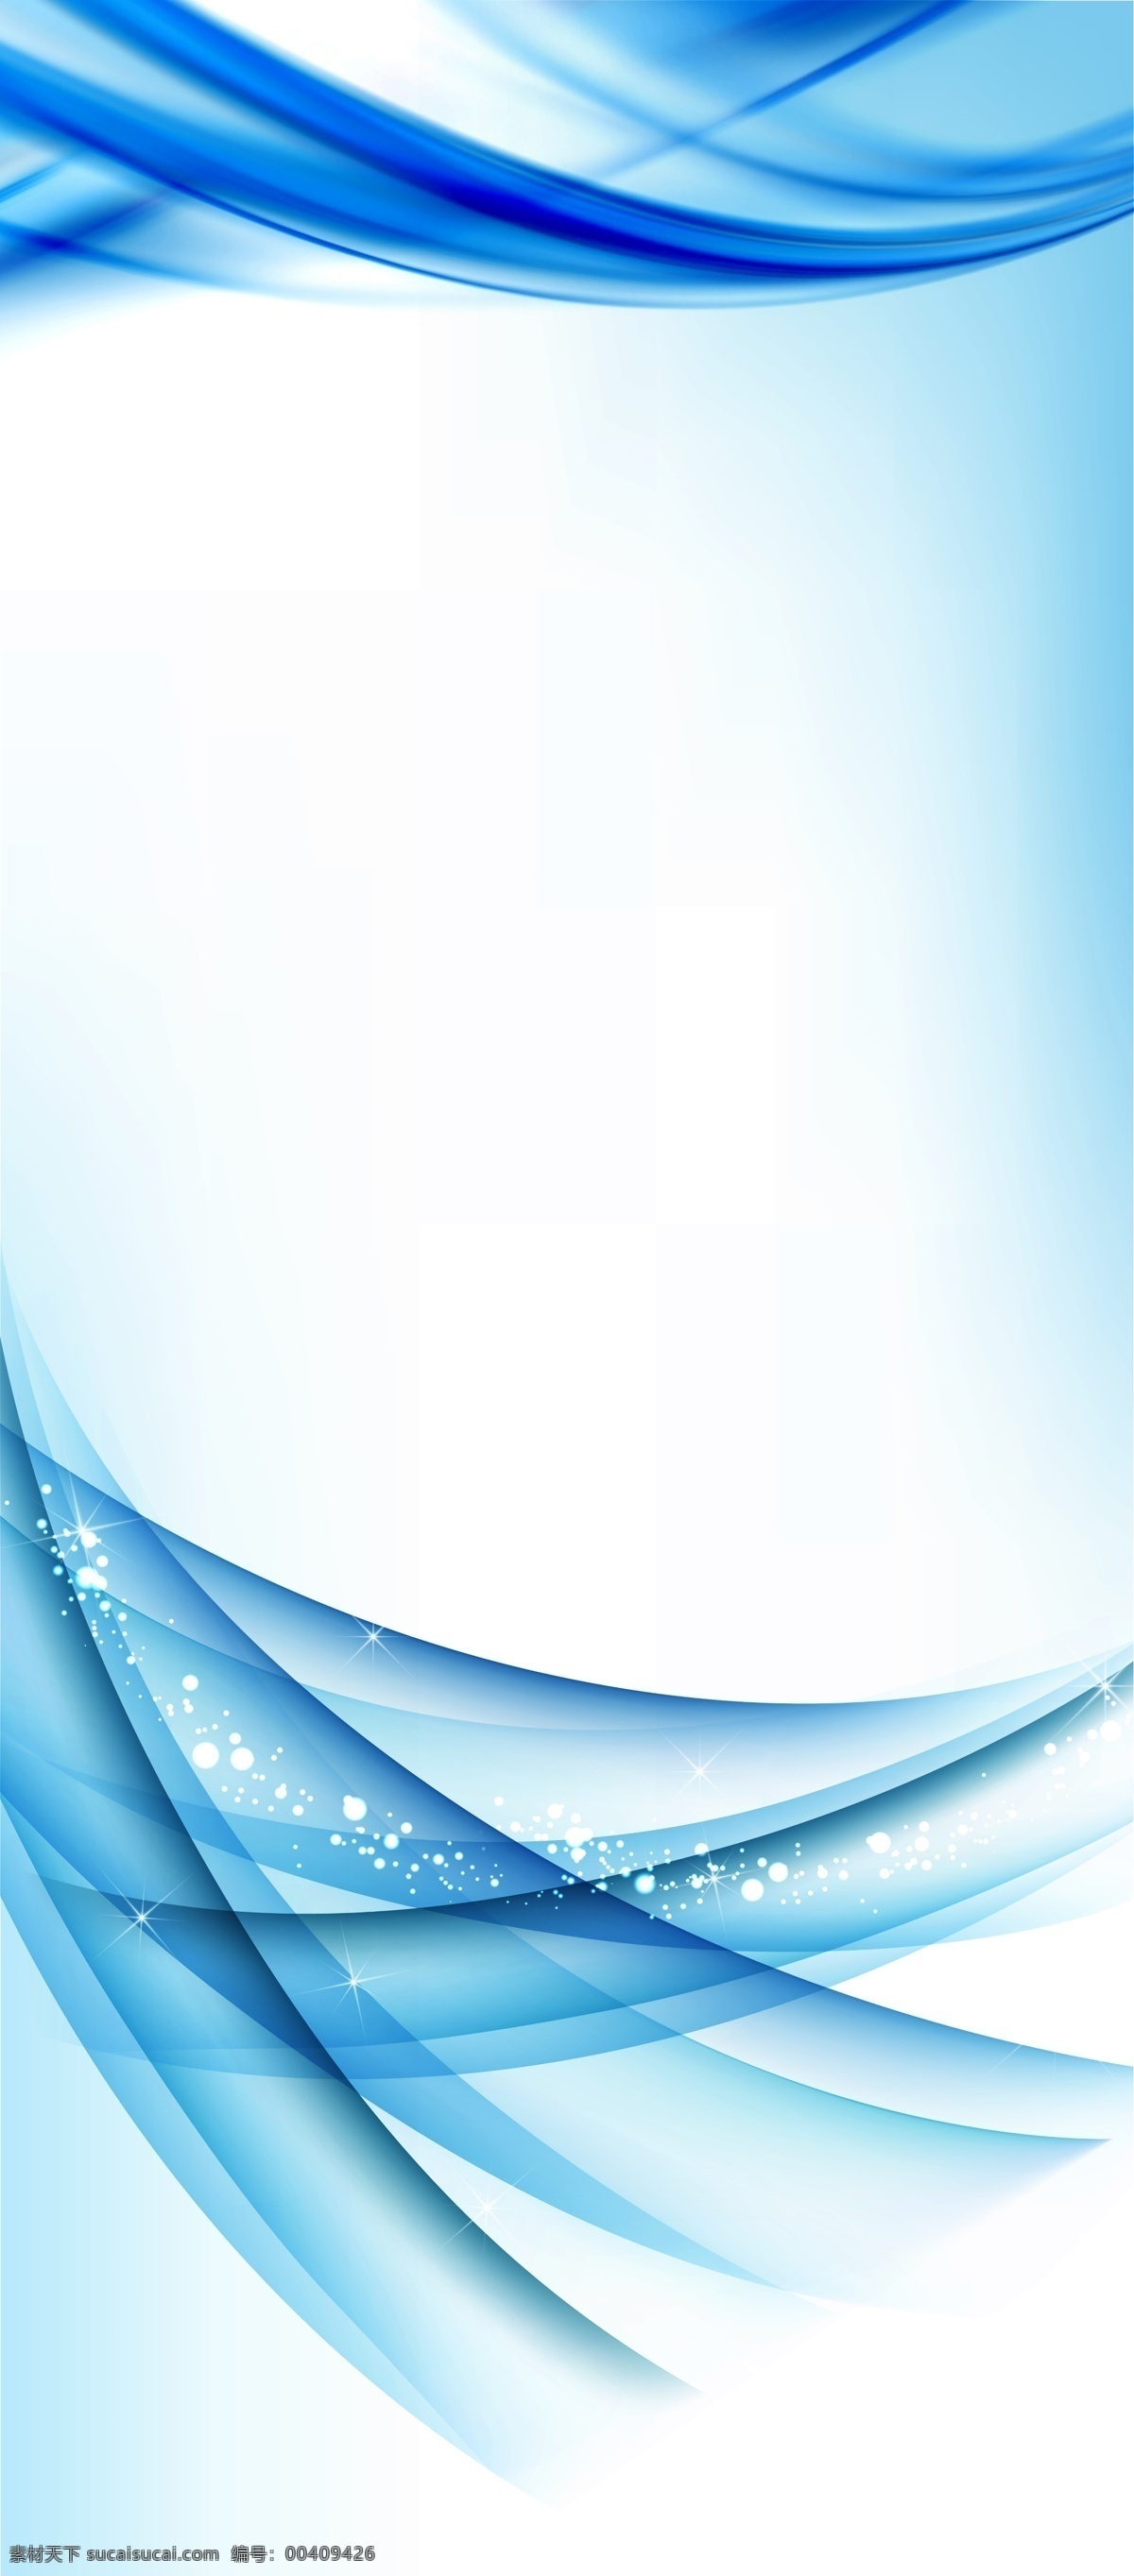 易拉宝 展架 背景 底 图 pop 规格 台式易拉宝 流线型风格 流线型 展板 x展架 x展架背景 x展架素材 x展板 x展架设计 蓝色 蓝色背景 流线 波浪 立式展架图片 展板海报 展板模板